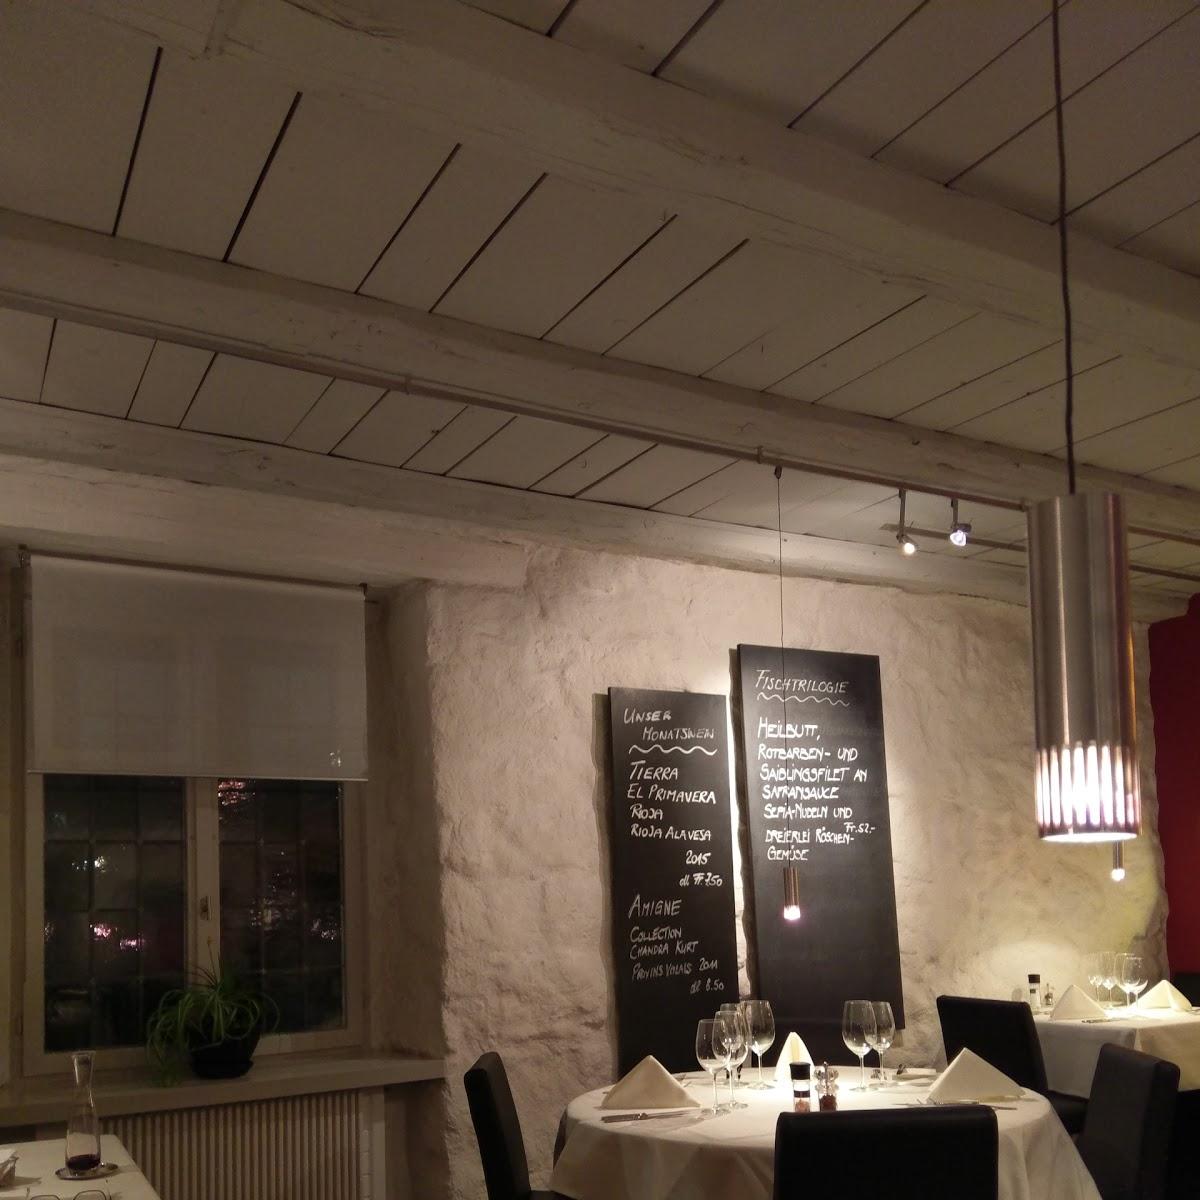 Restaurant "Gasthof Solbad & Sommerpark am Rhein" in Muttenz